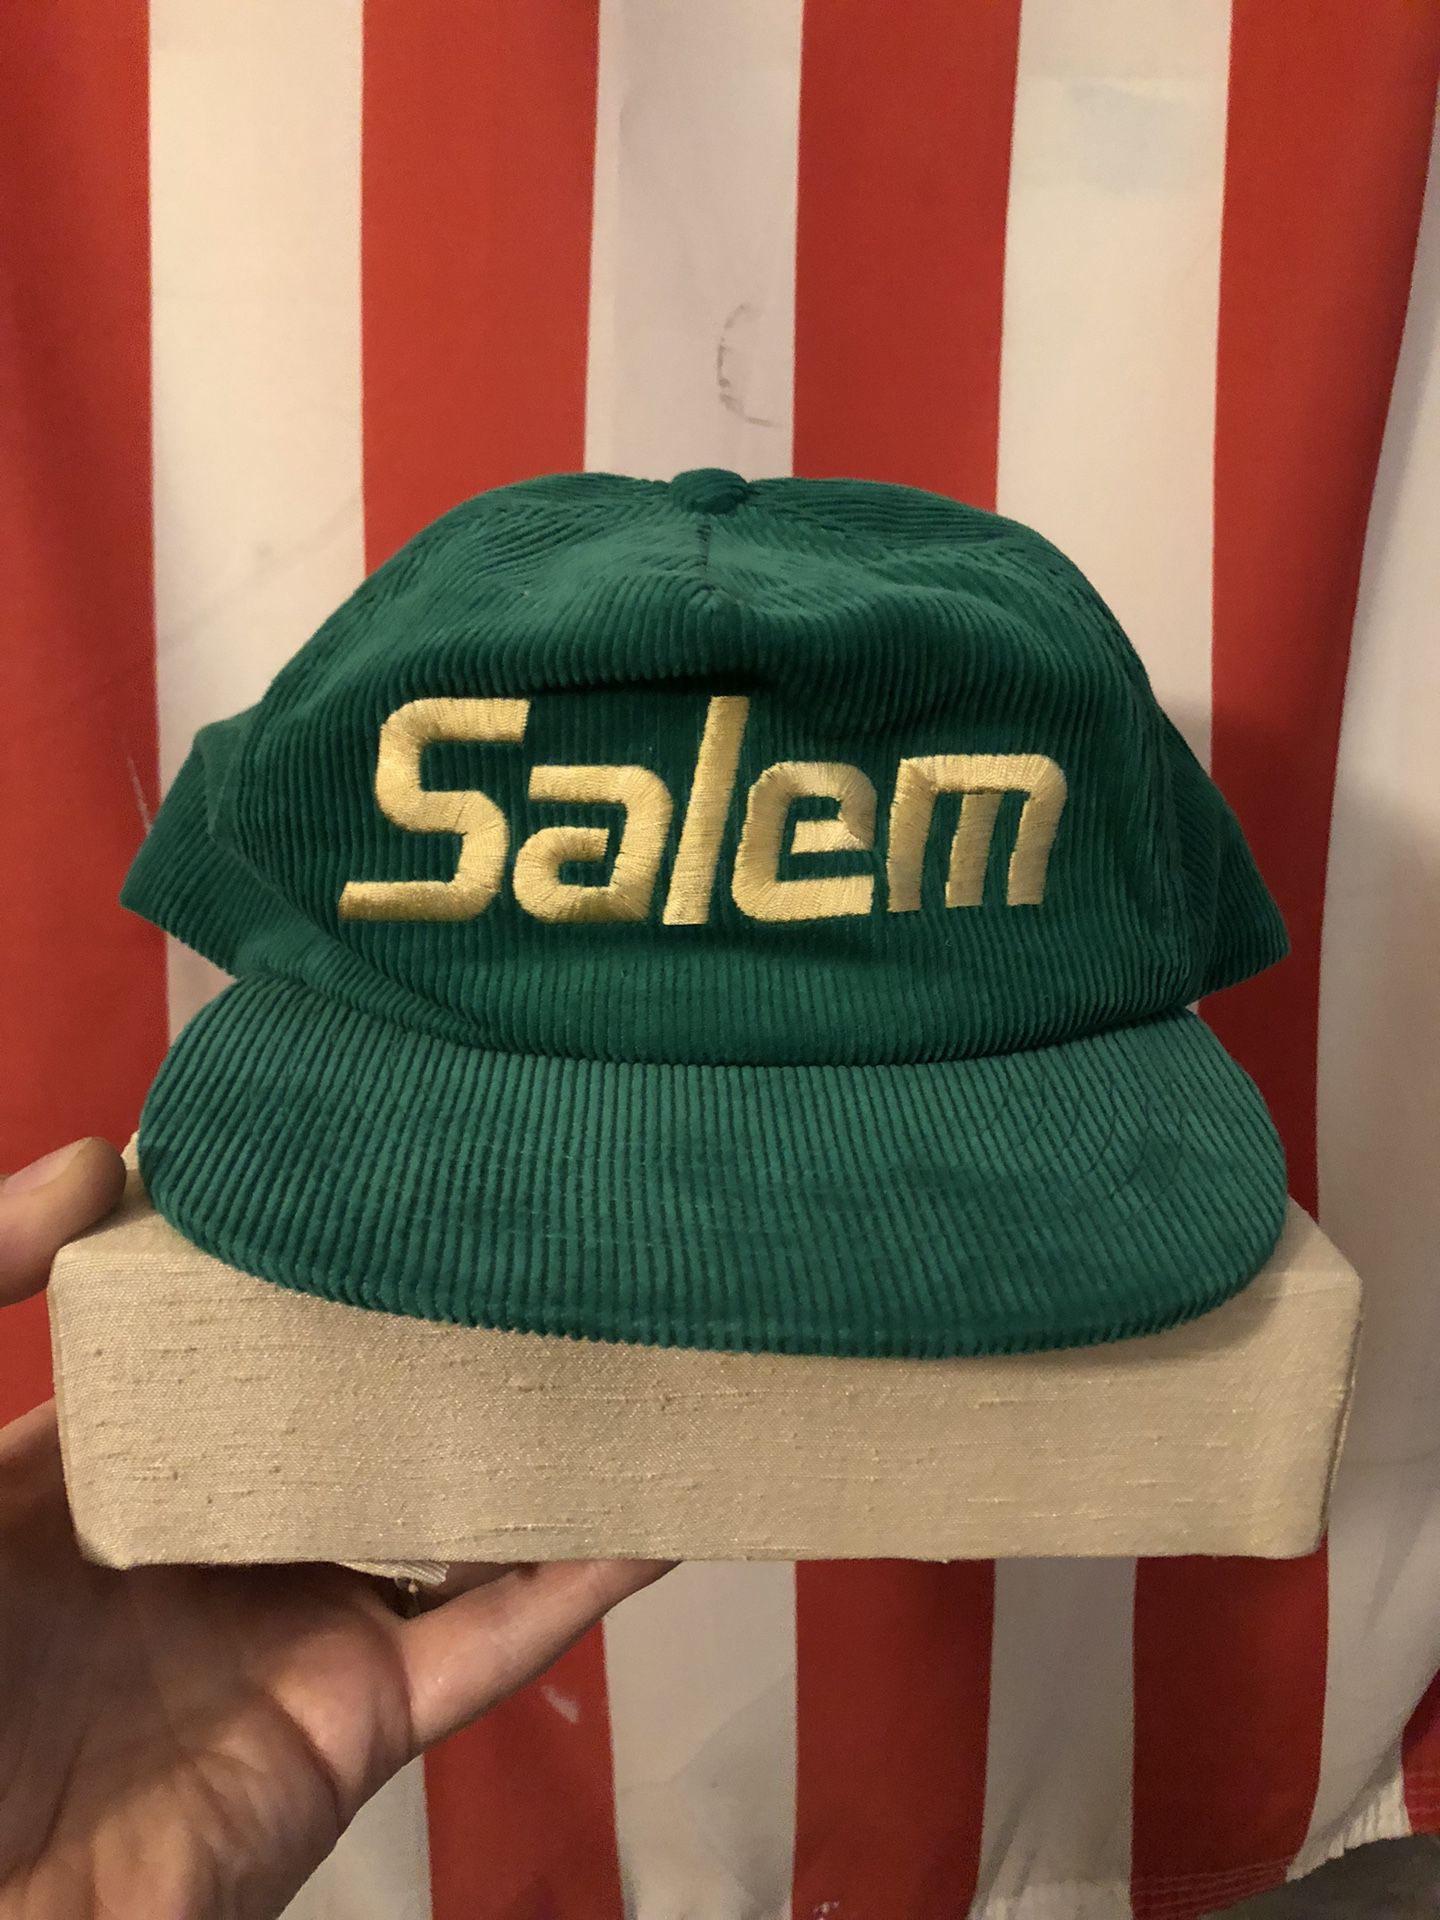 Vintage Salem Cigarettes Corduroy Snapback Hat